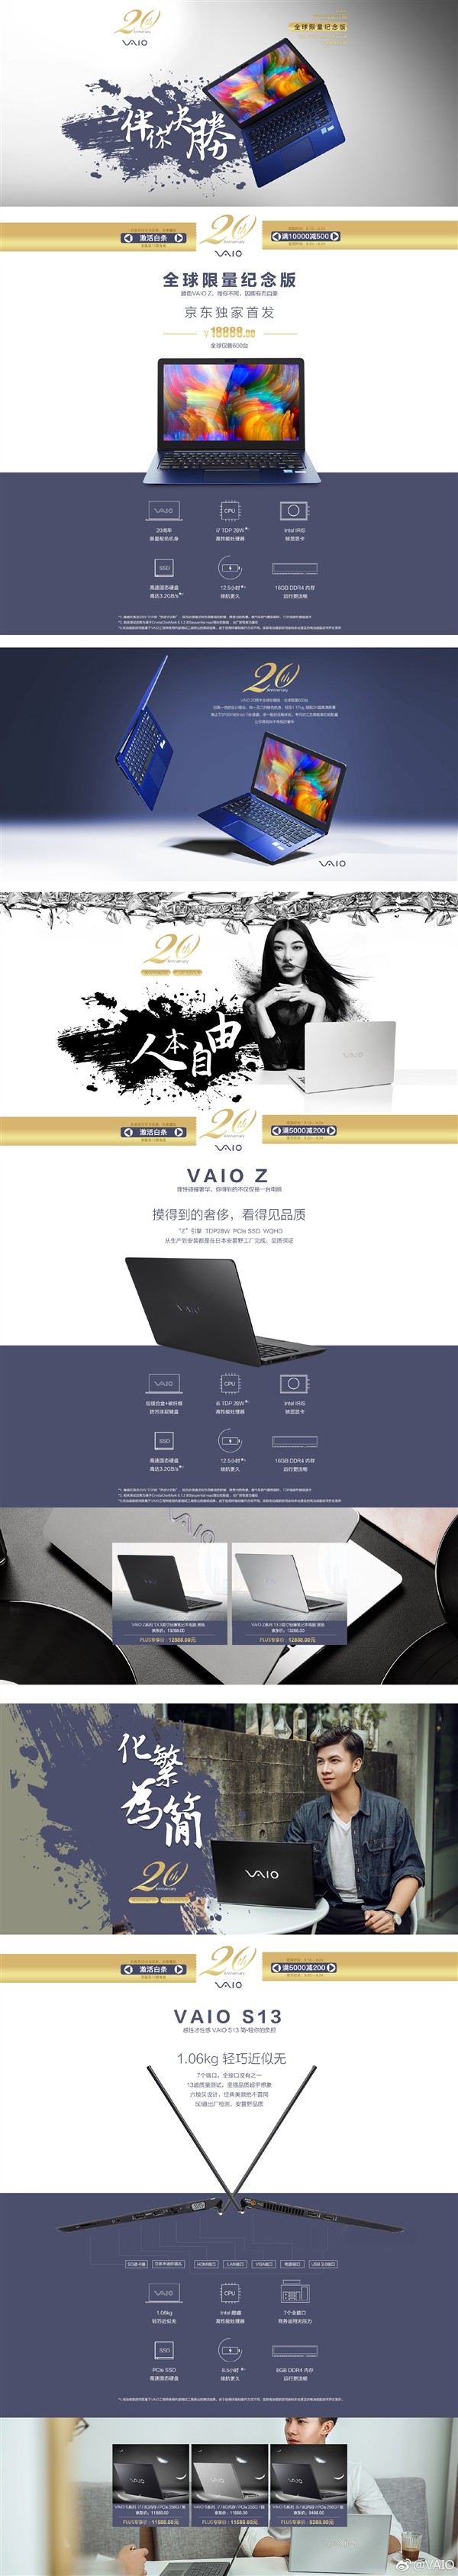 全球限量600台：VAIO 推出 VAIO Z 20周年纪念版 笔记本电脑